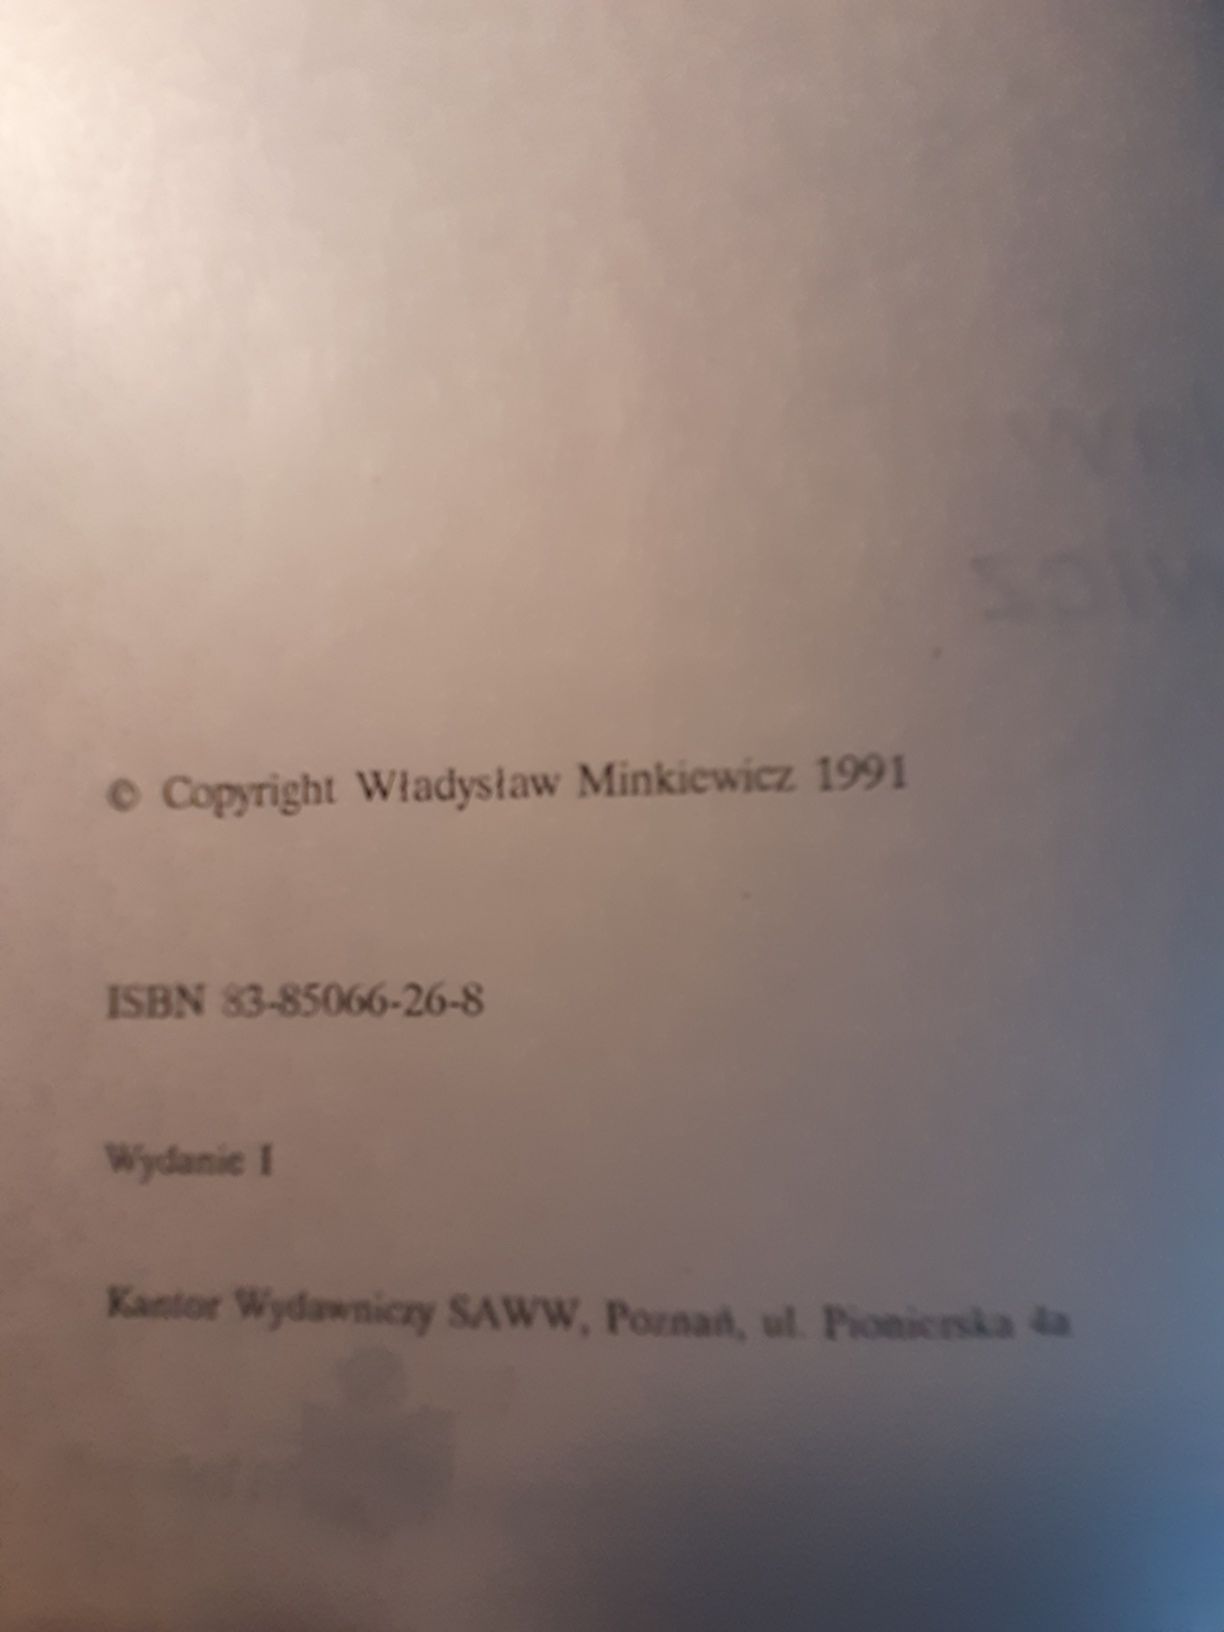 " Olimijska gorączka " Władysława Minkiewicza